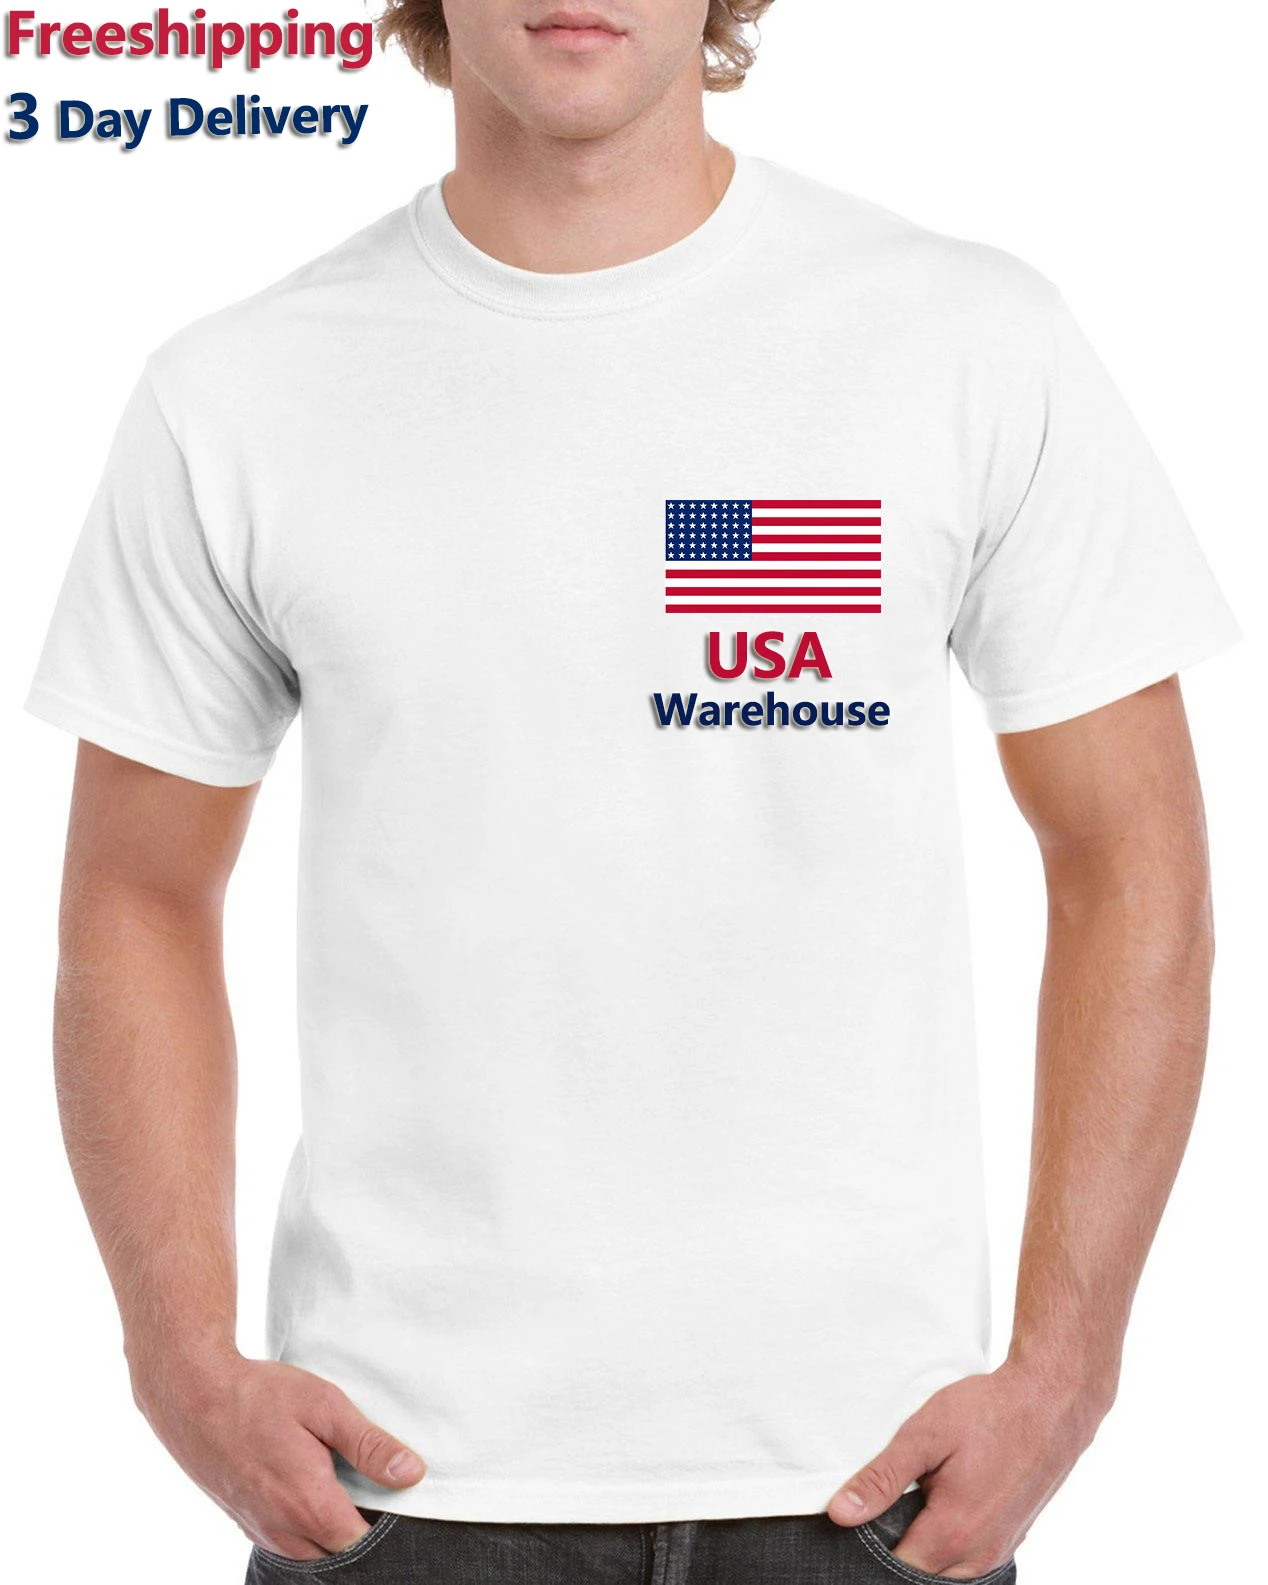 USA Warehouse Free Shipping Bulk Blank